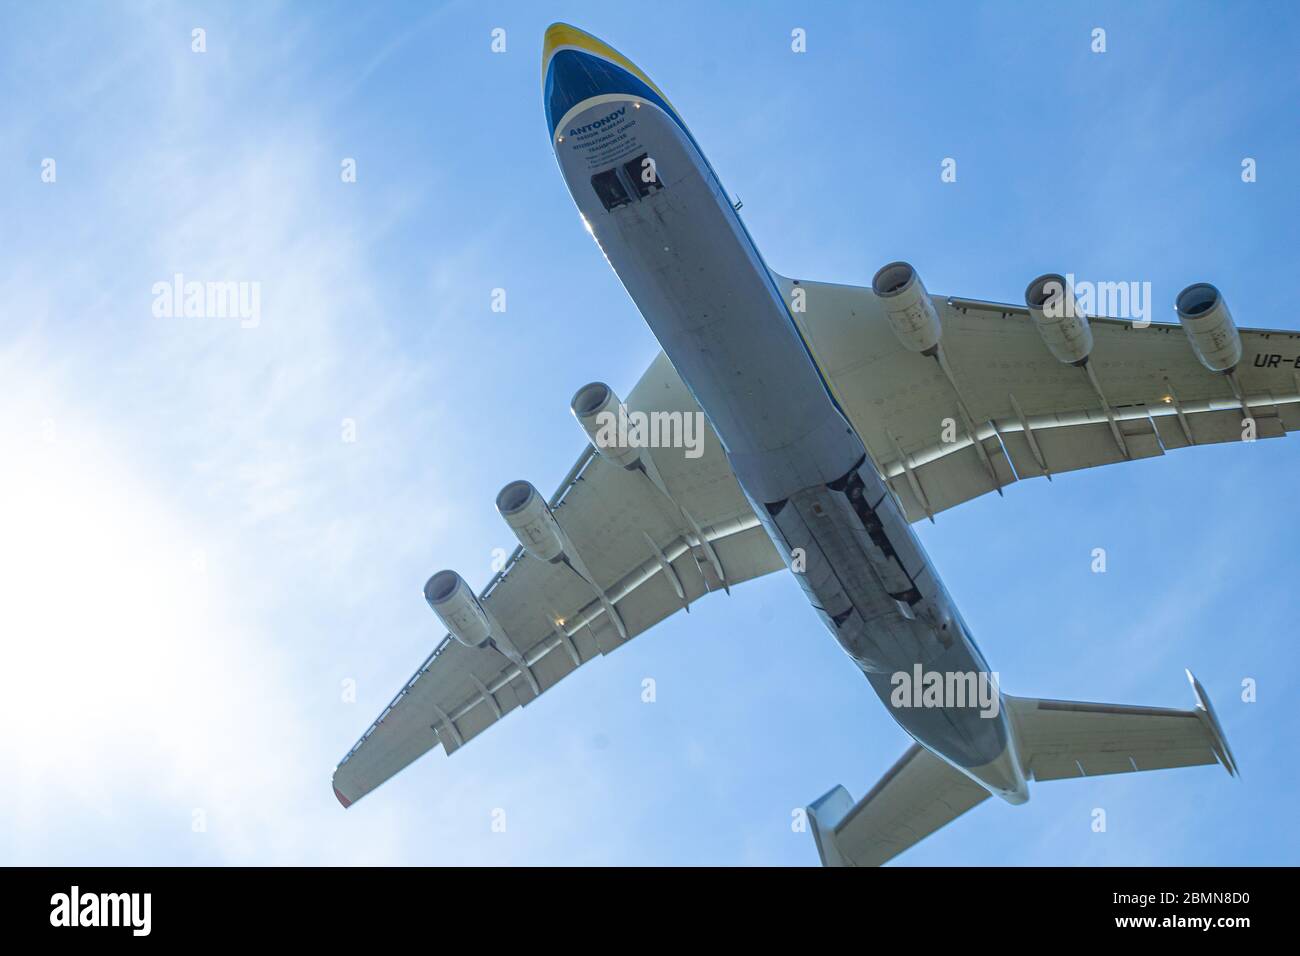 Kiev, Ucraina - 10 maggio 2020: Antonov AN-225 Mriya aereo volare all'aeroporto Gostomel. Il più grande aereo del mondo. UR-82060 più grande aeromobile Foto Stock